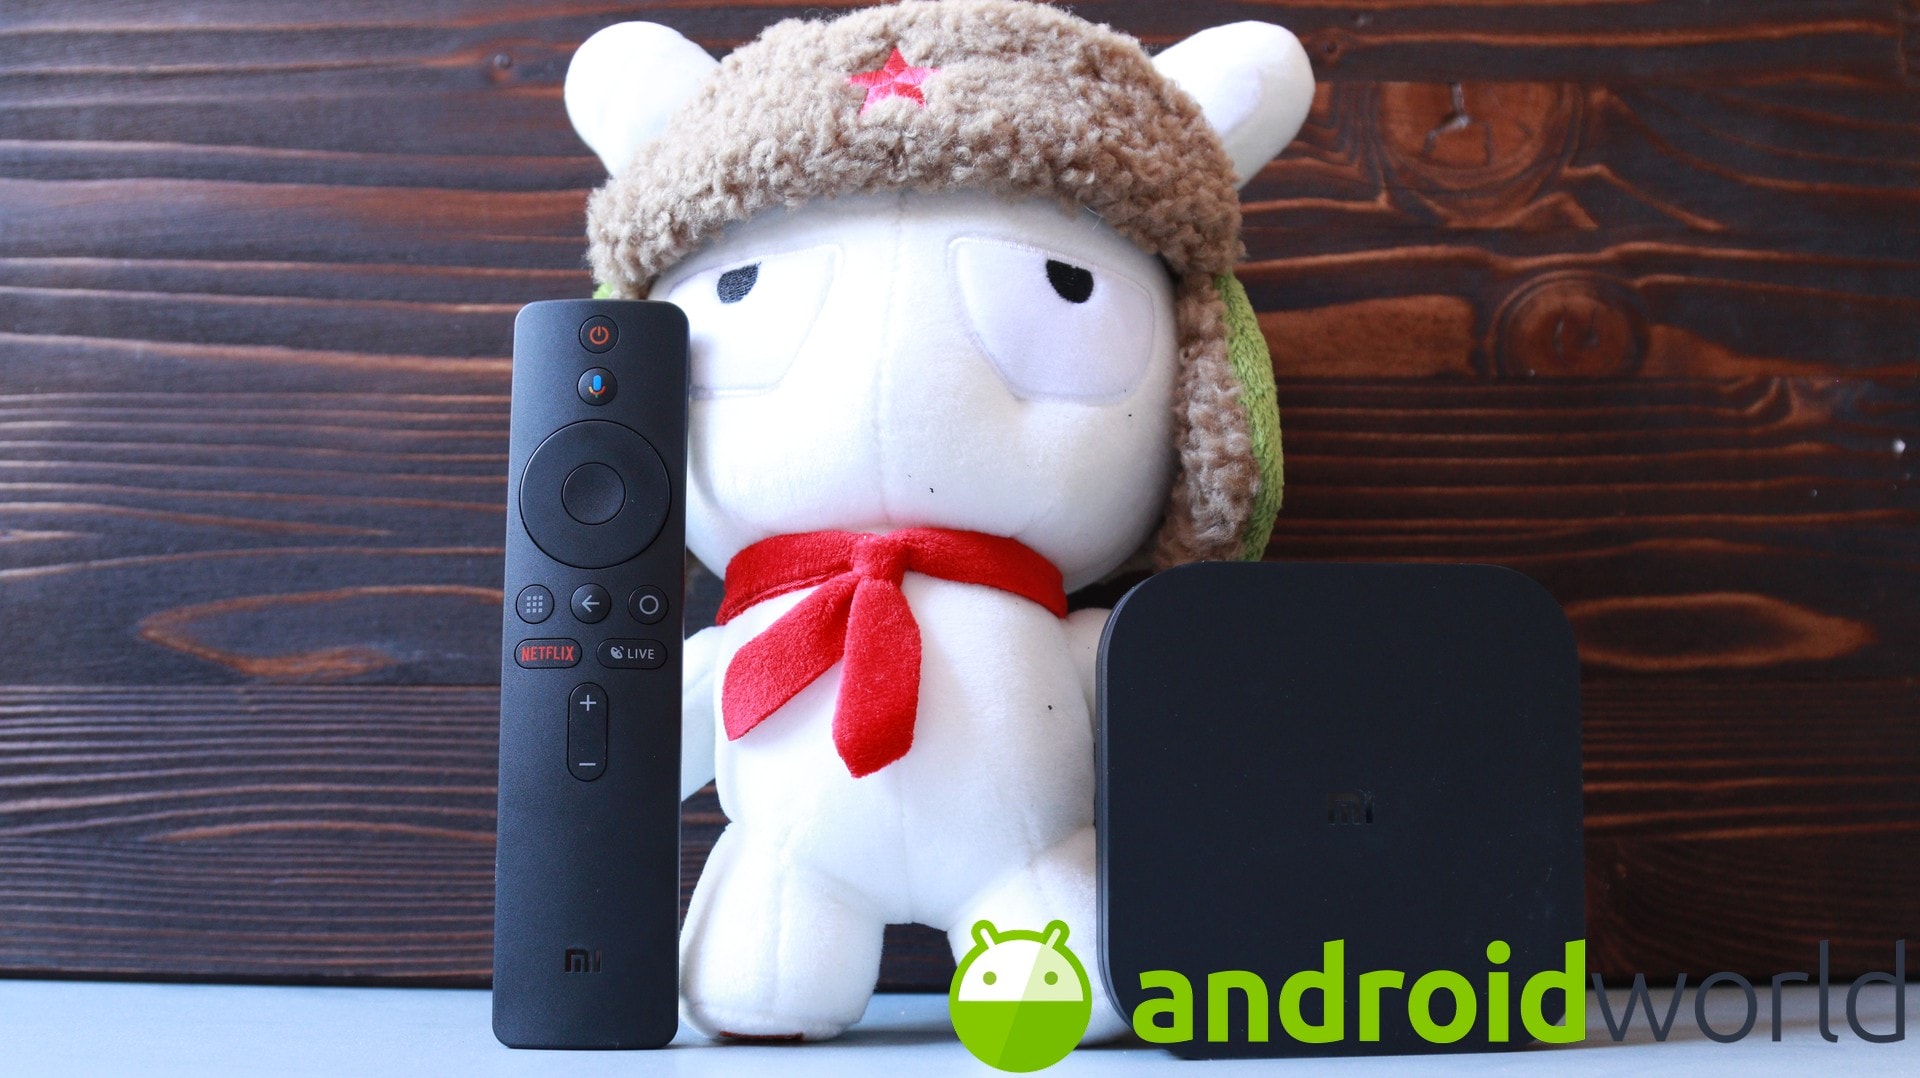 Xiaomi Mi Box S si aggiorna ancora ad Android Pie: i problemi a video, Chromecast e Bluetooth sono risolti, vero?